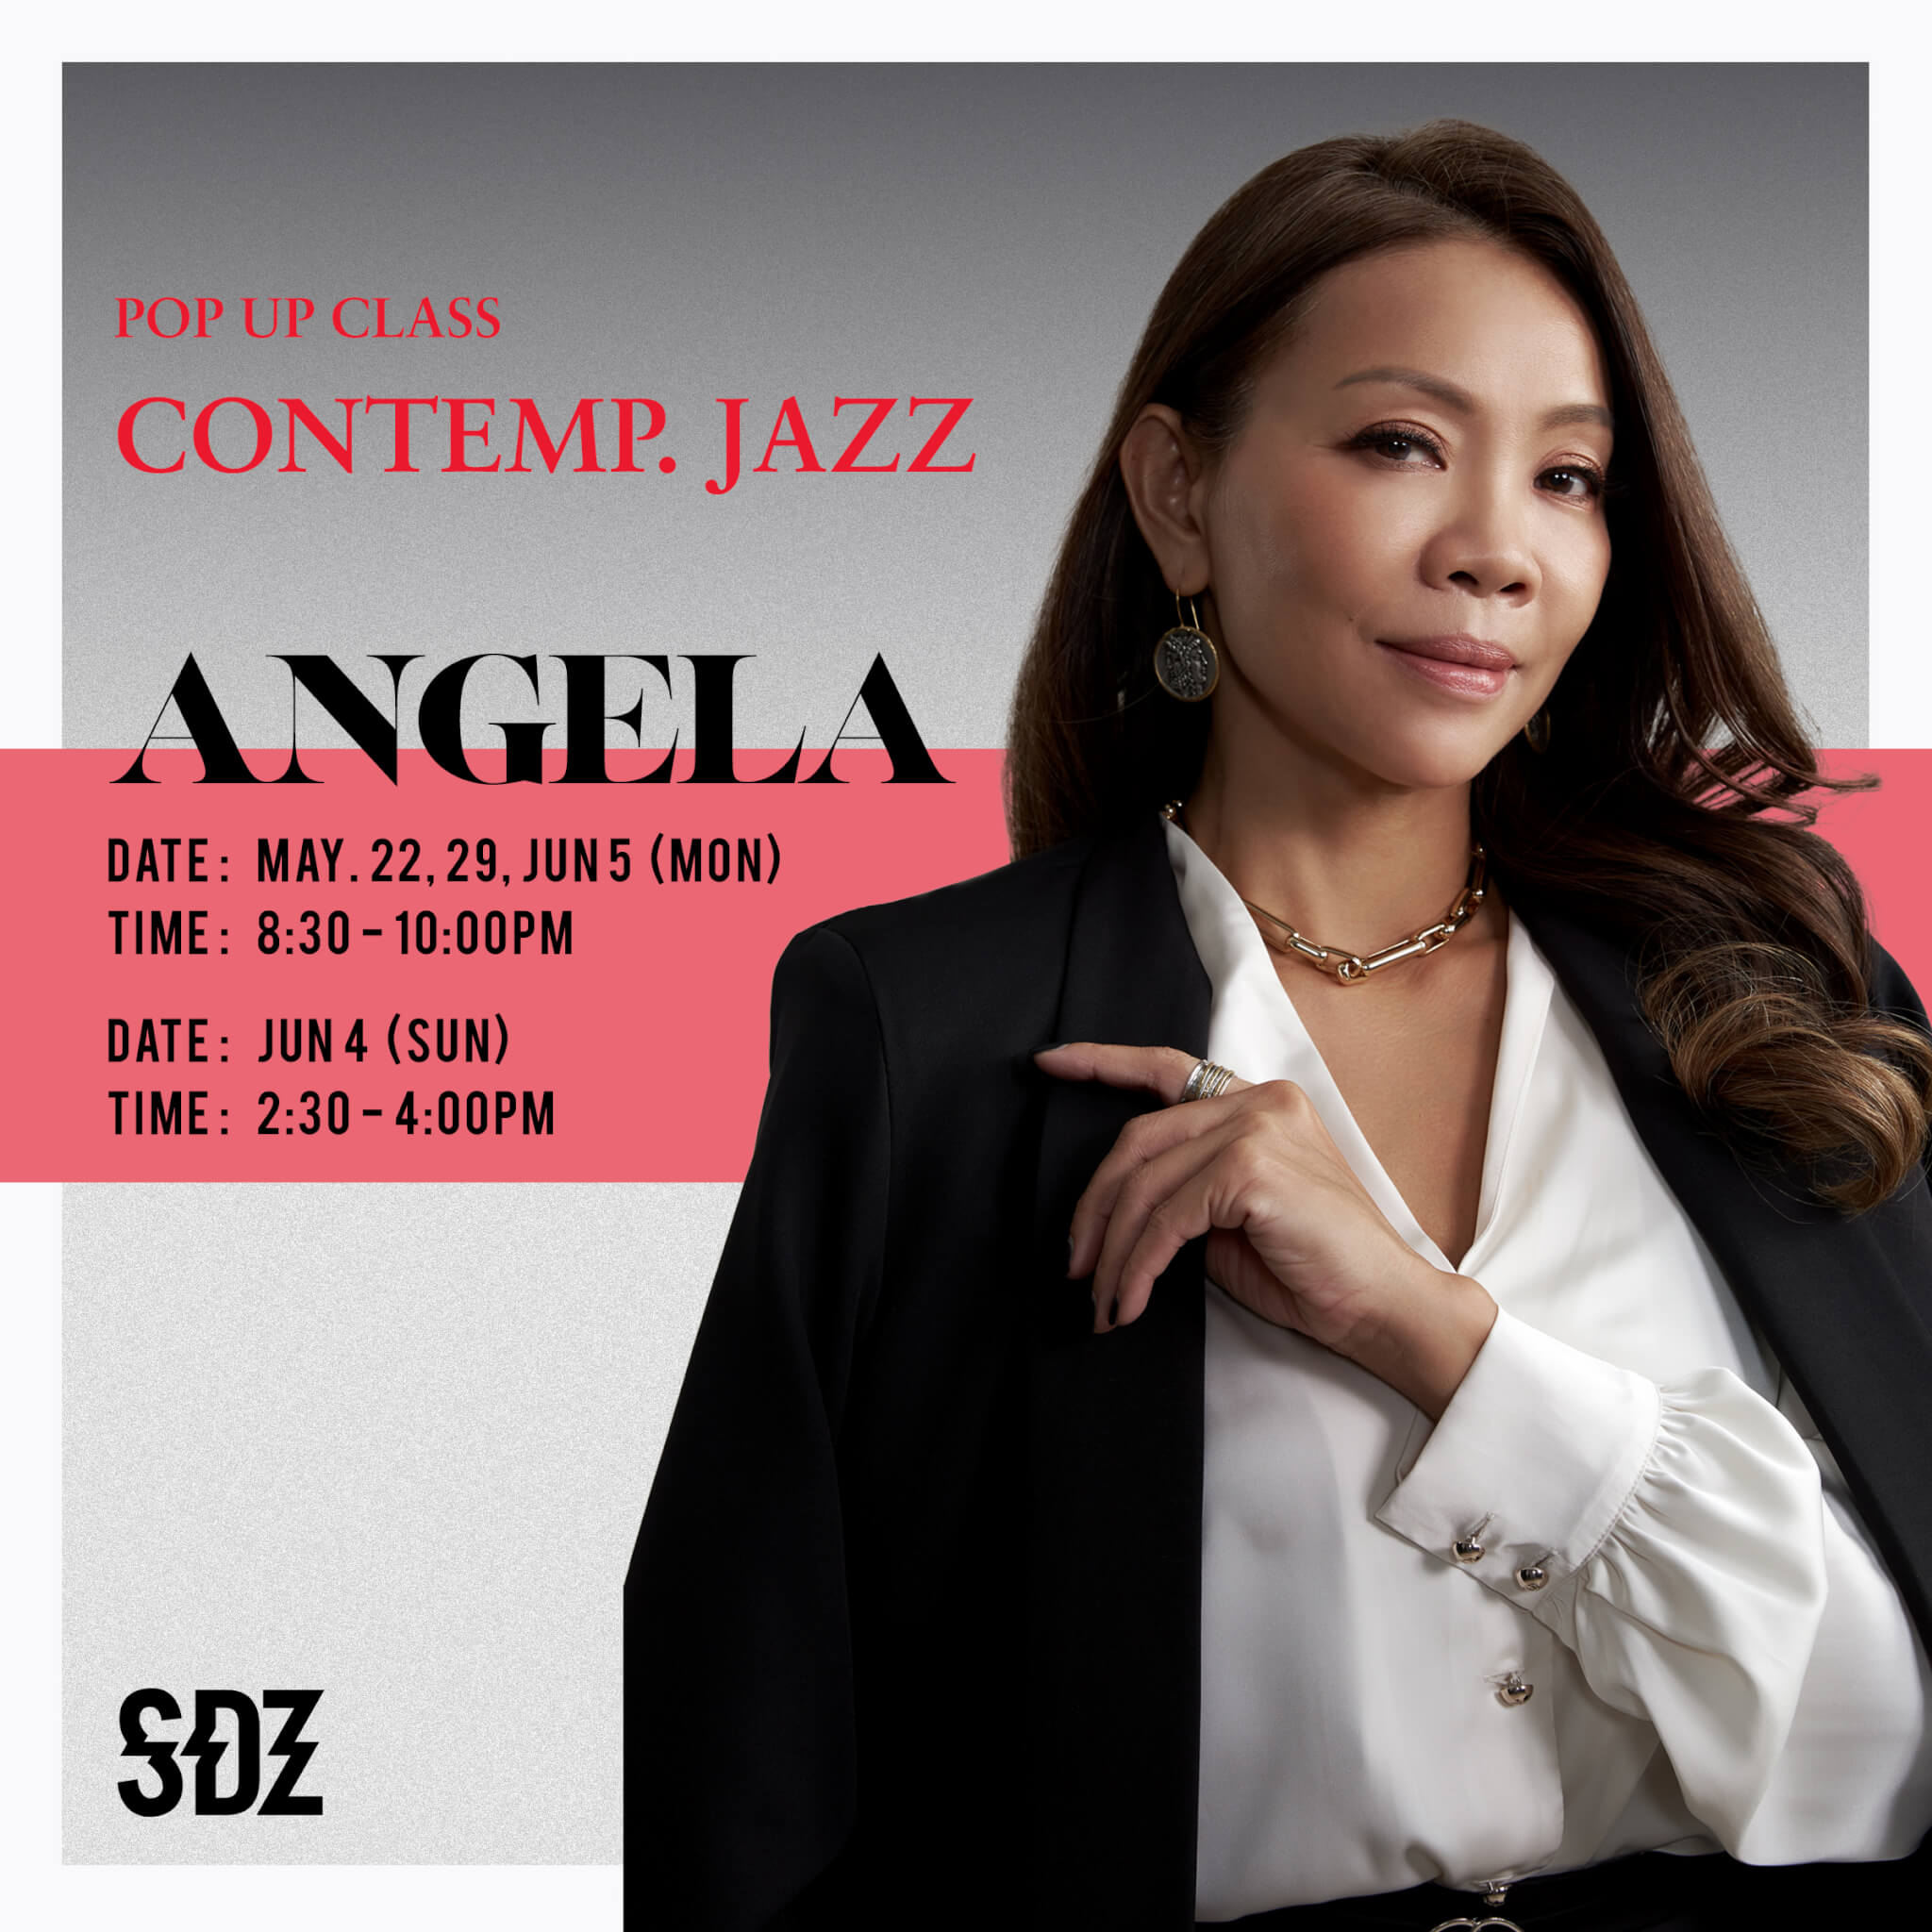 Pop Up Class - Contemp. Jazz - Angela